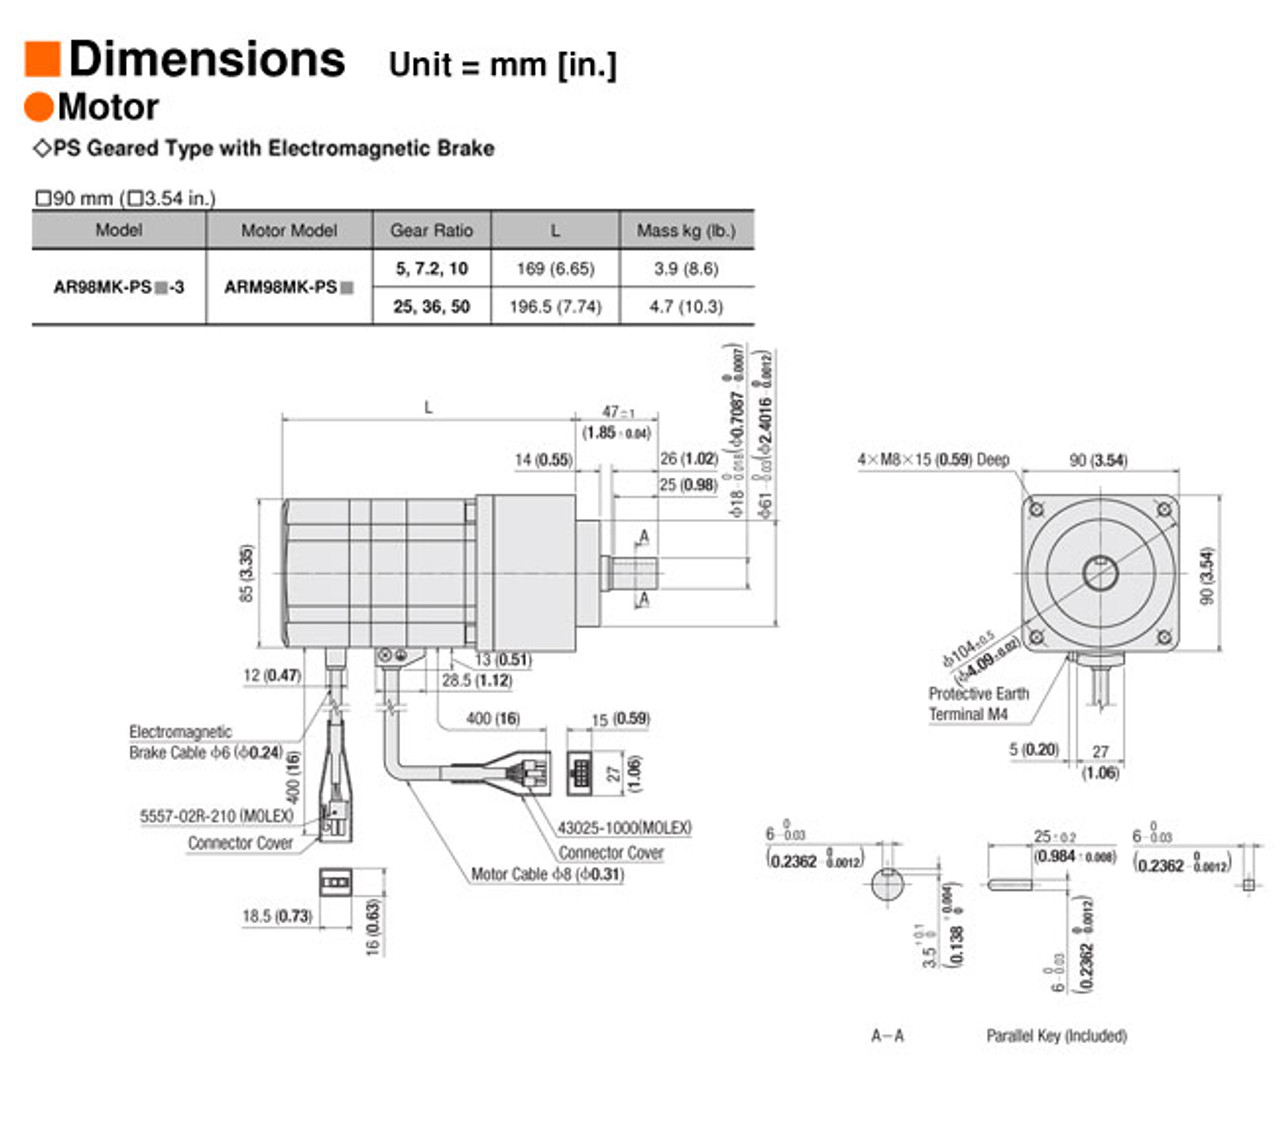 AR98MK-PS50-3 - Dimensions